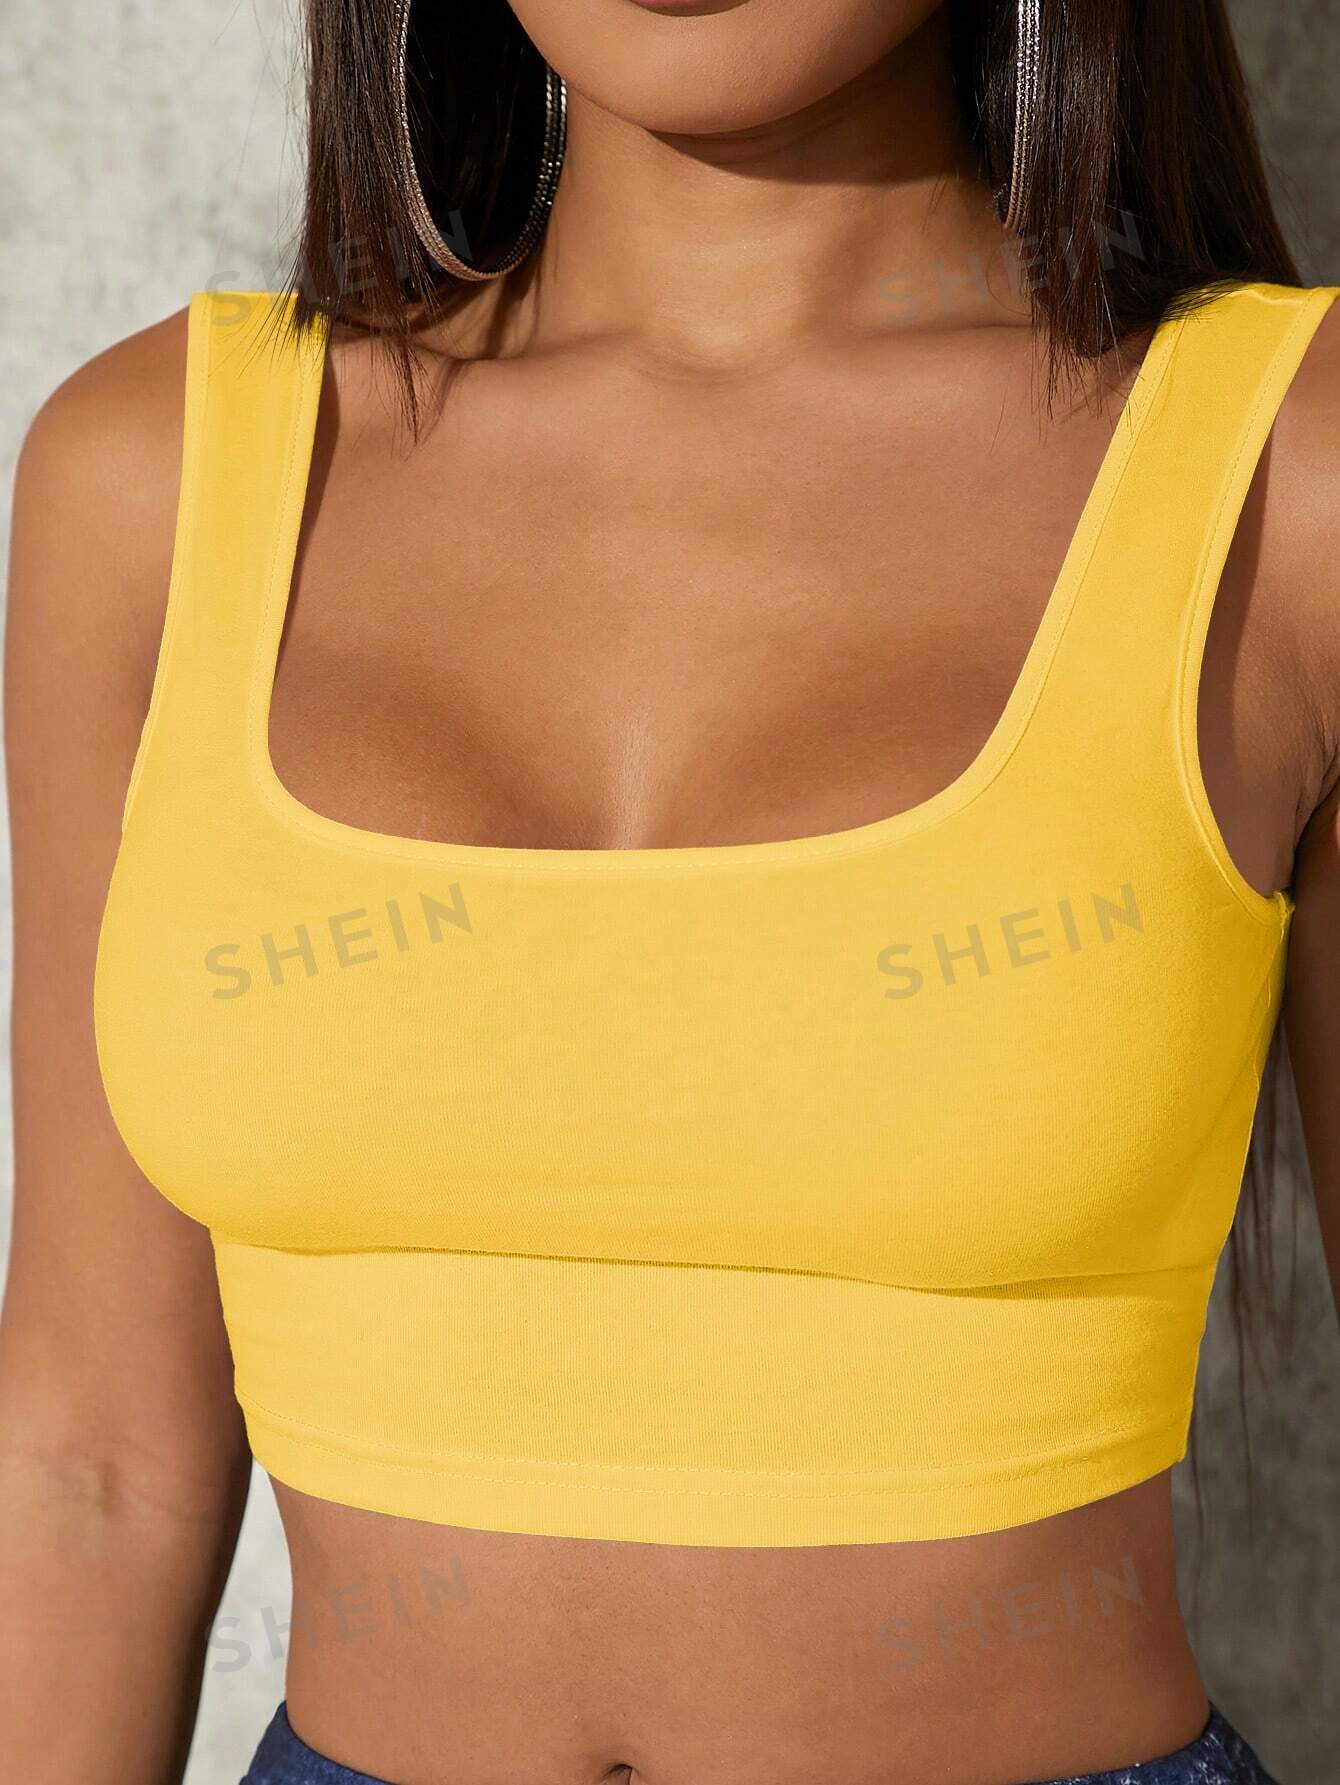 shein yoga базовая однотонная спортивная одежда приталенного кроя темно серый SHEIN SXY Однотонная укороченная майка приталенного кроя, горчично-желтый